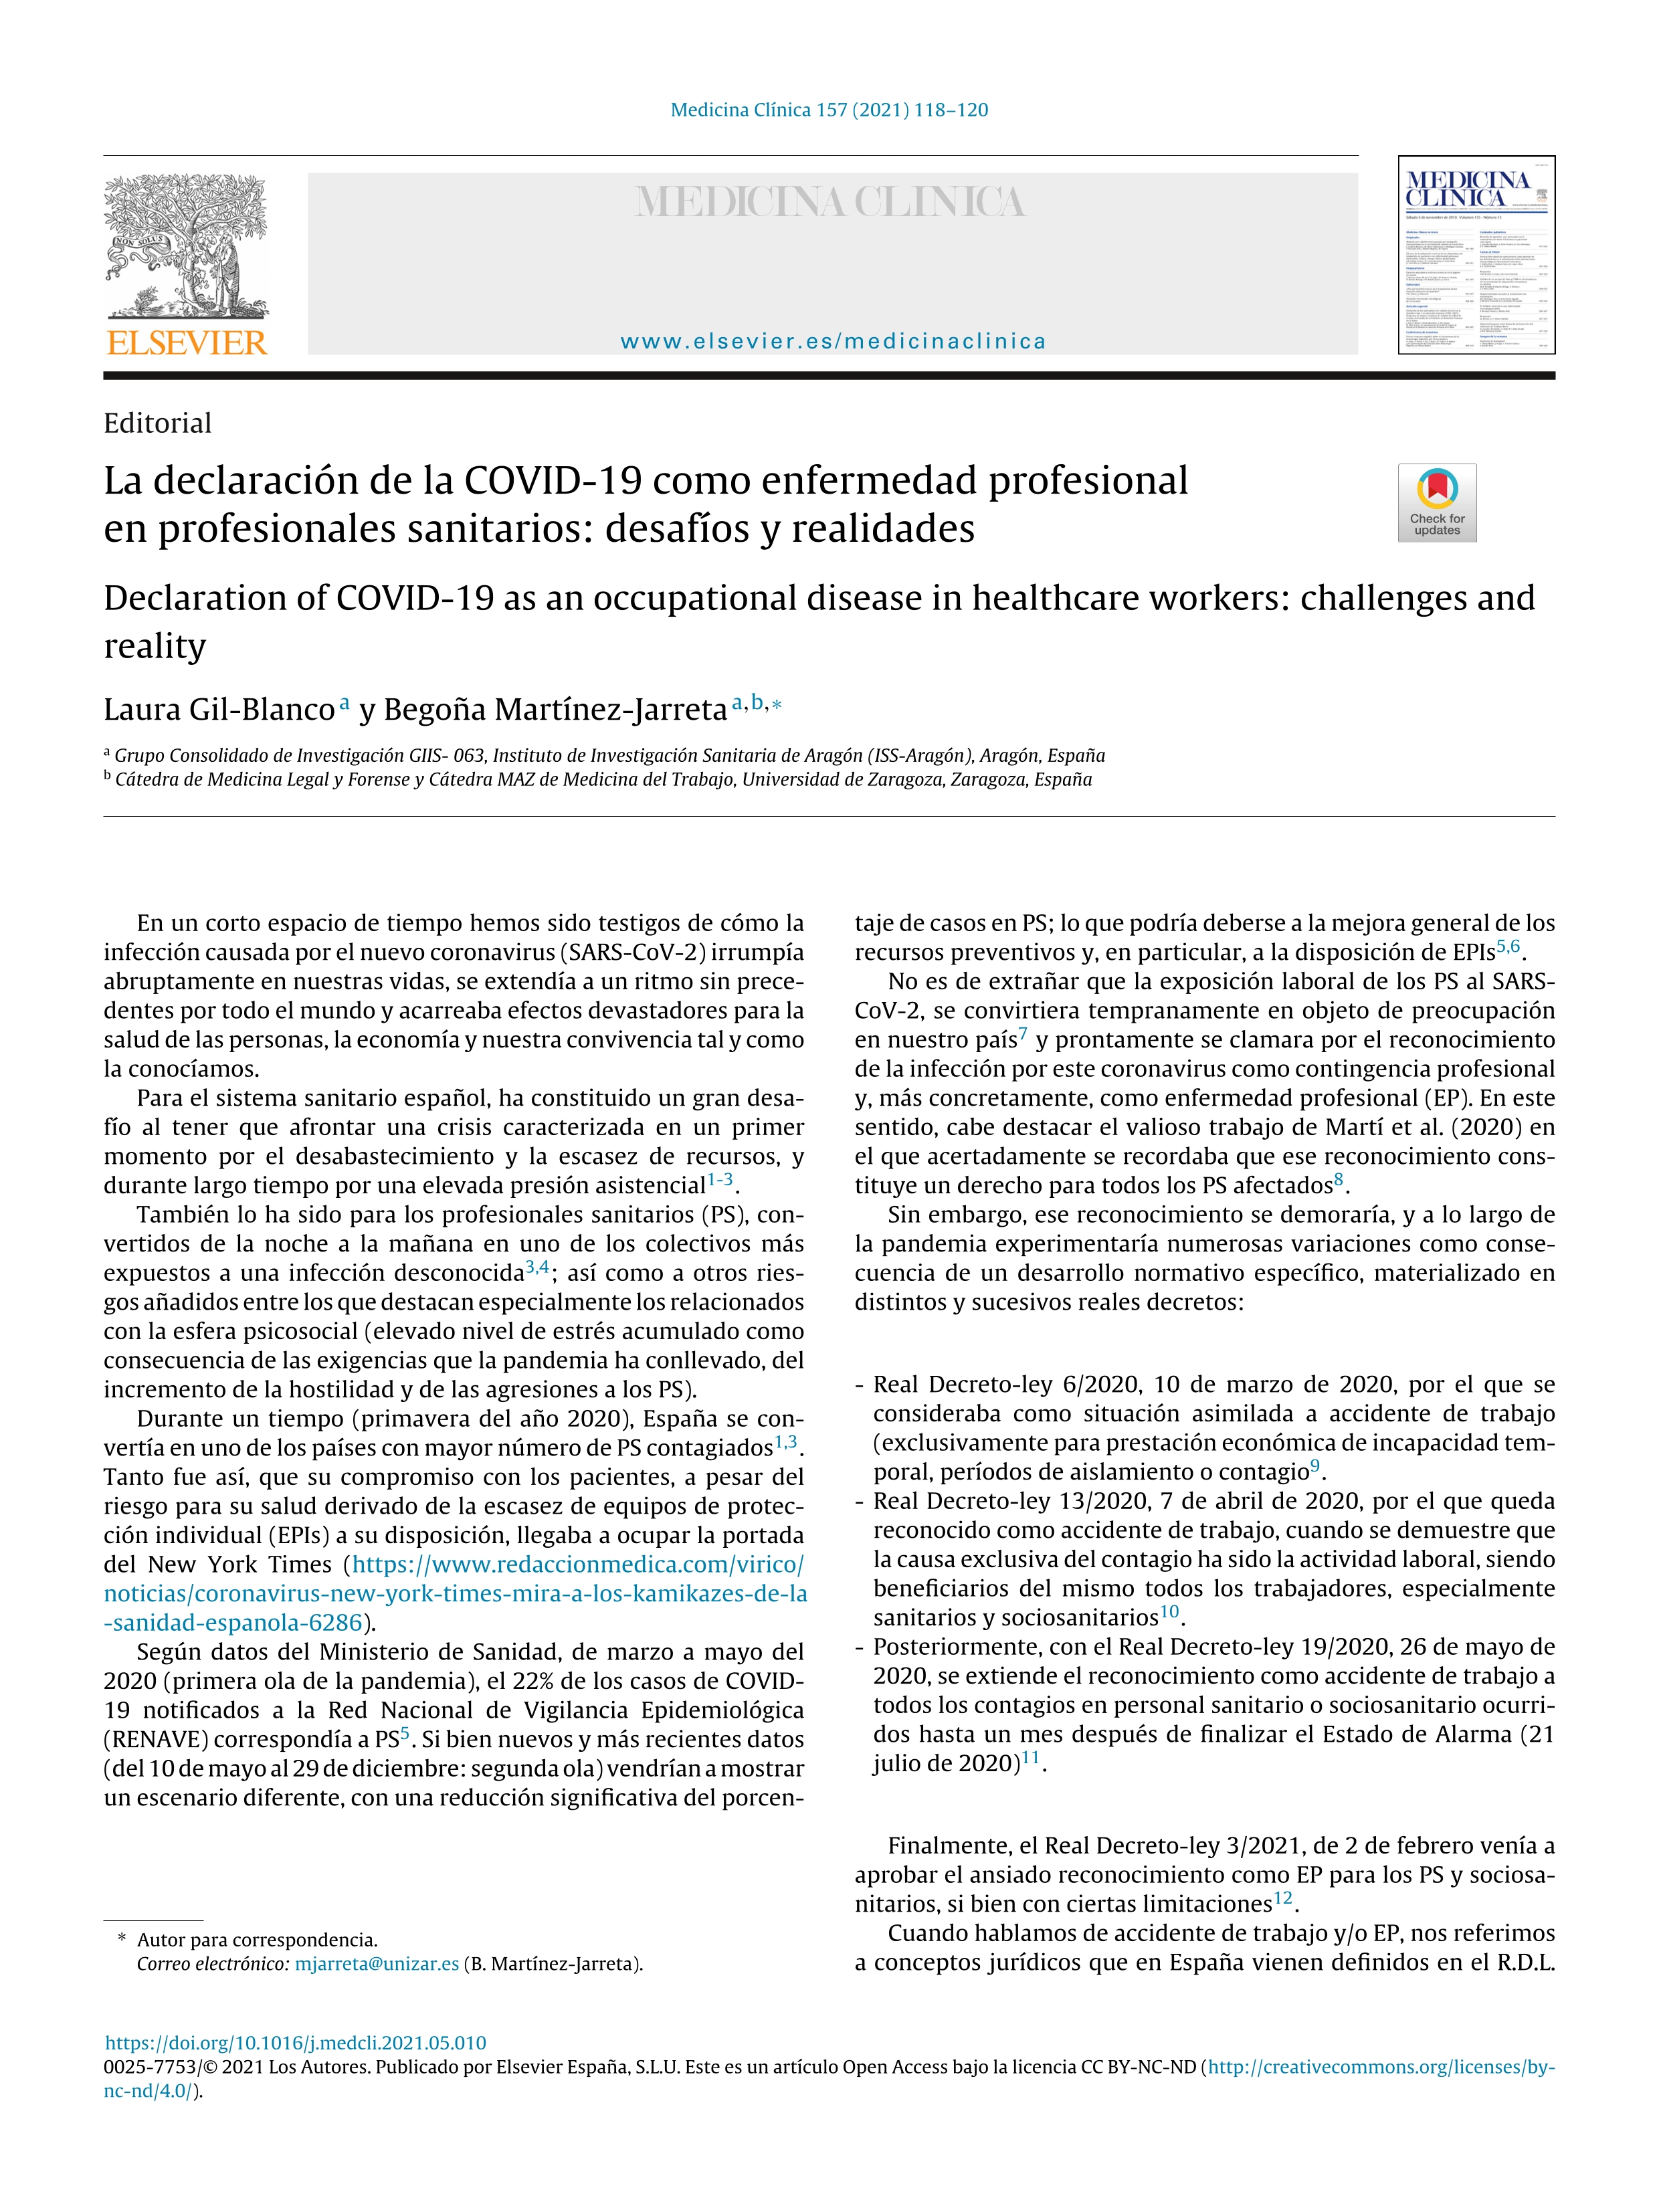 La declaración de la Covid-19 como enfermedad profesional en profesionales sanitarios: desafíos y realidades